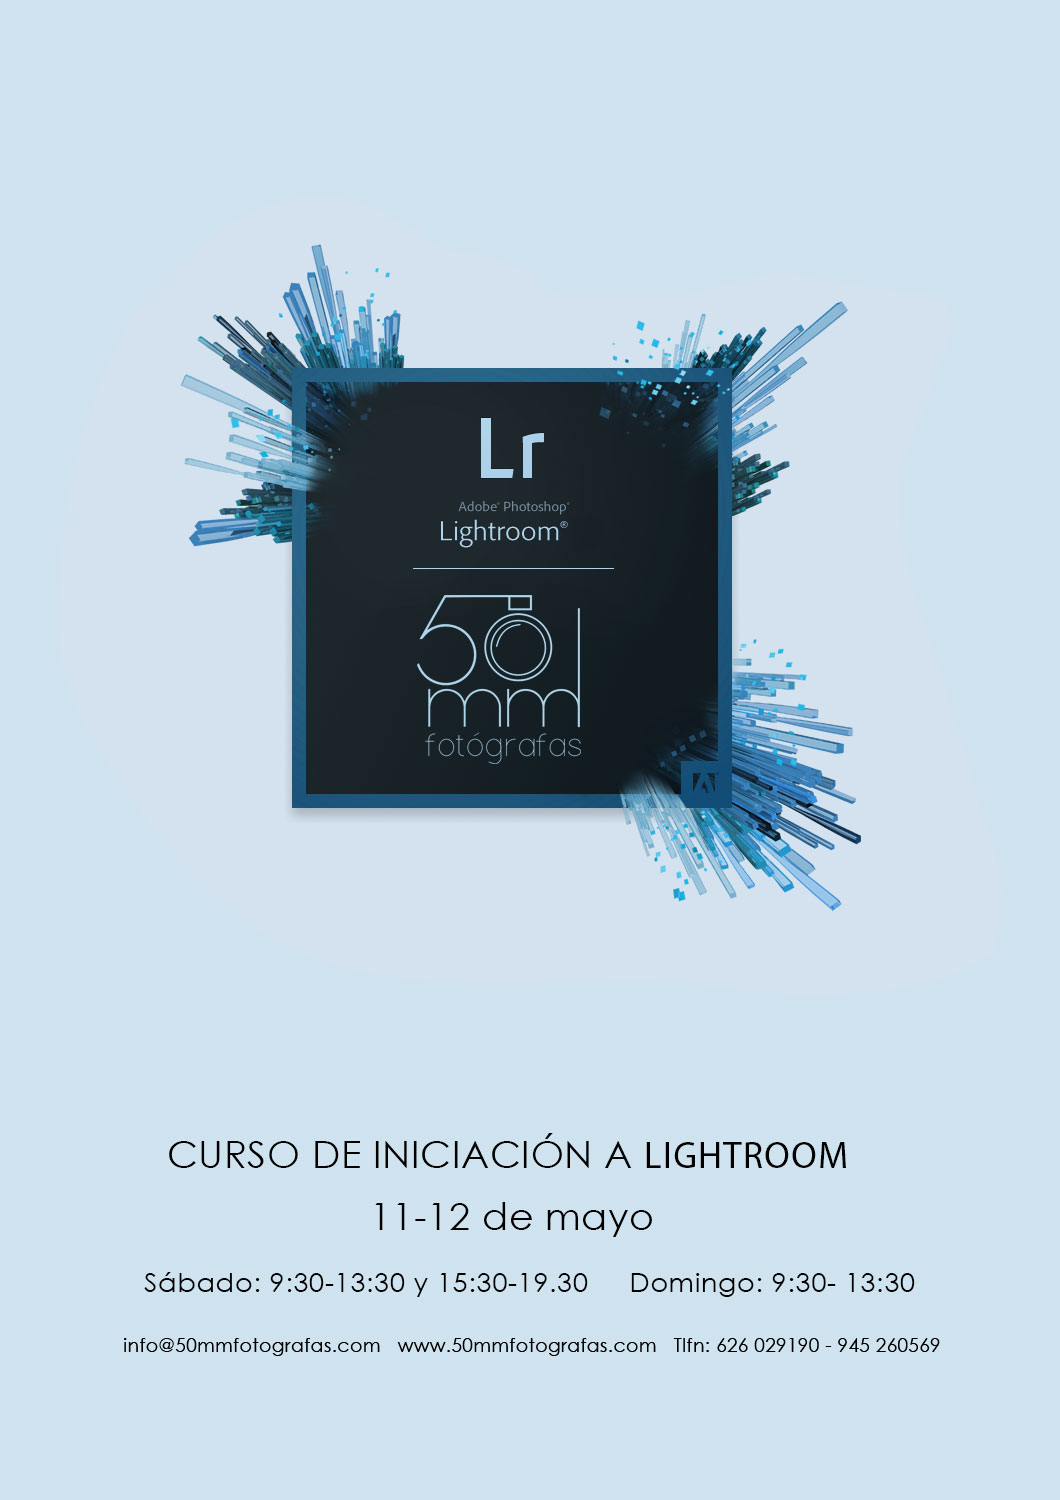 Curso de iniciación a Lightroom en Vitoria